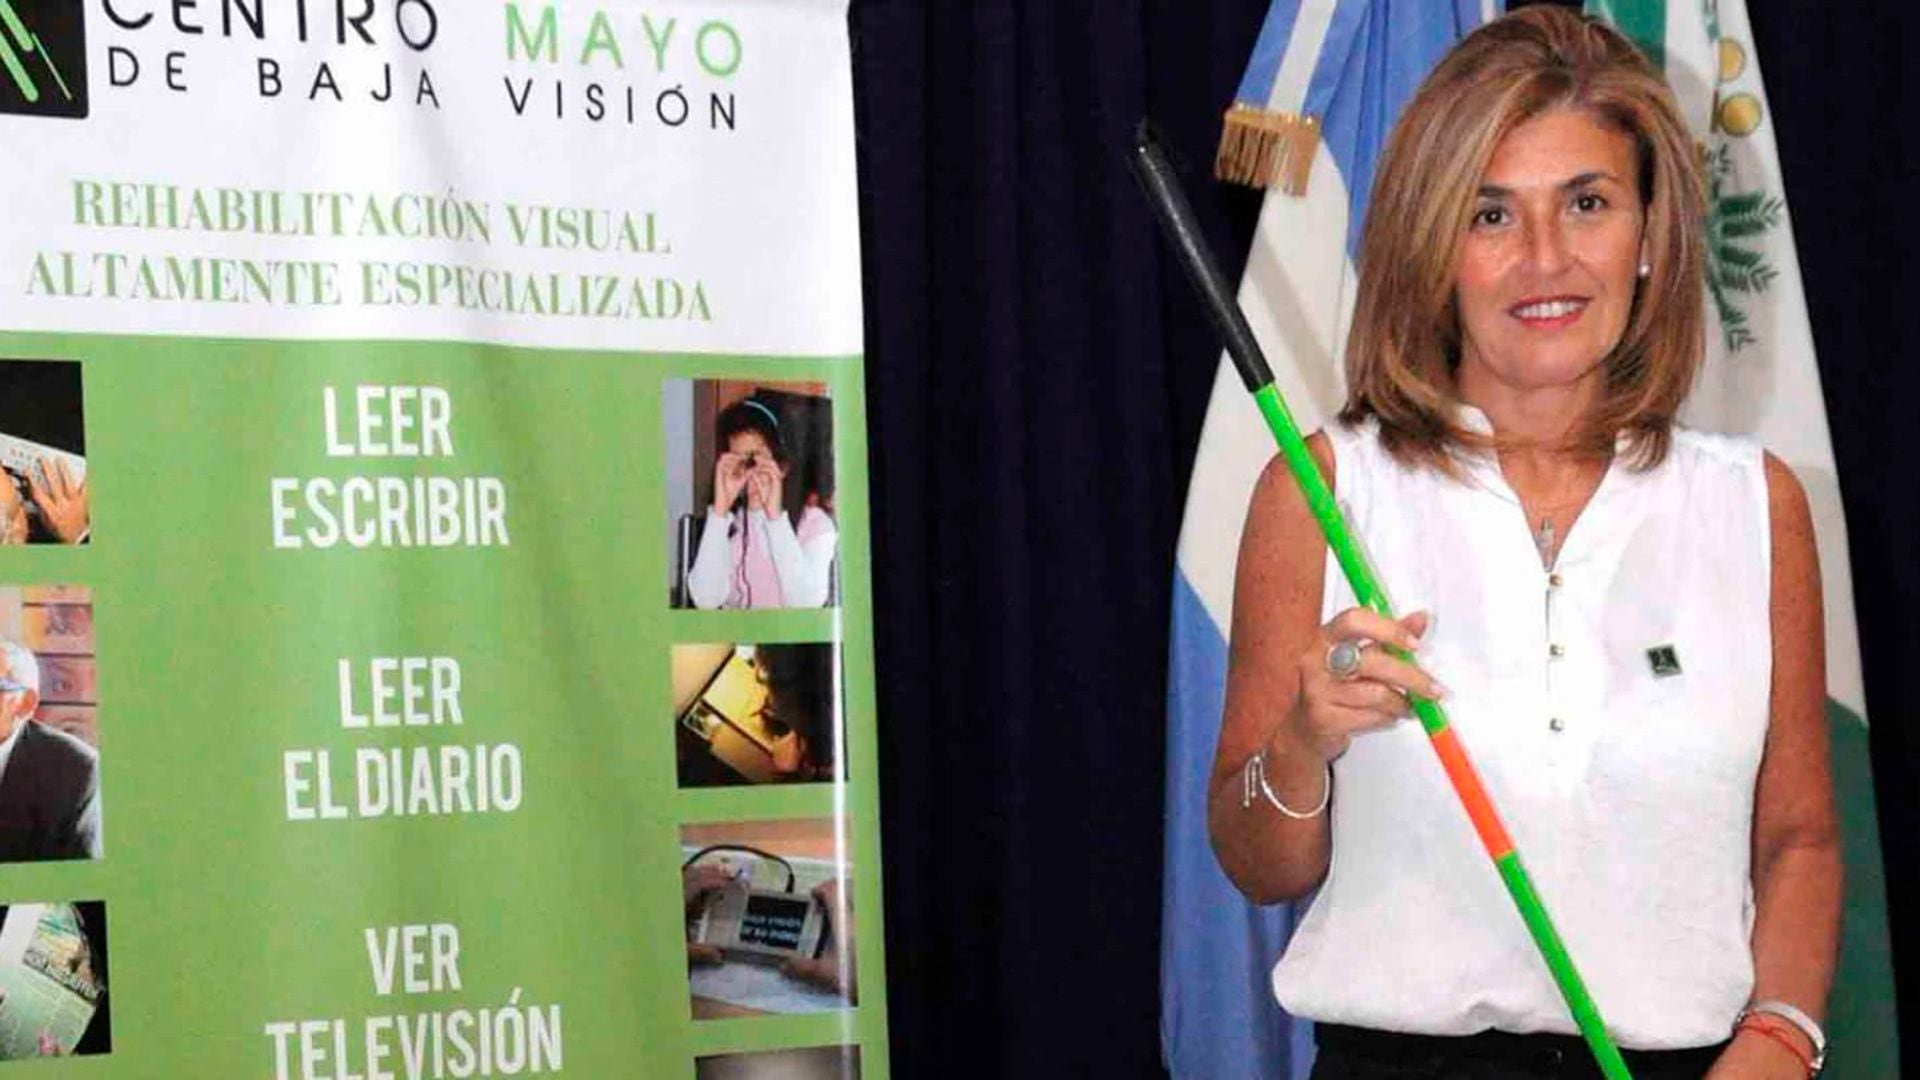 Perla Catherine Mayo, la profesora uruguaya detrás de la iniciativa del Bastón Verde, que es un símbolo de orientación y movilidad